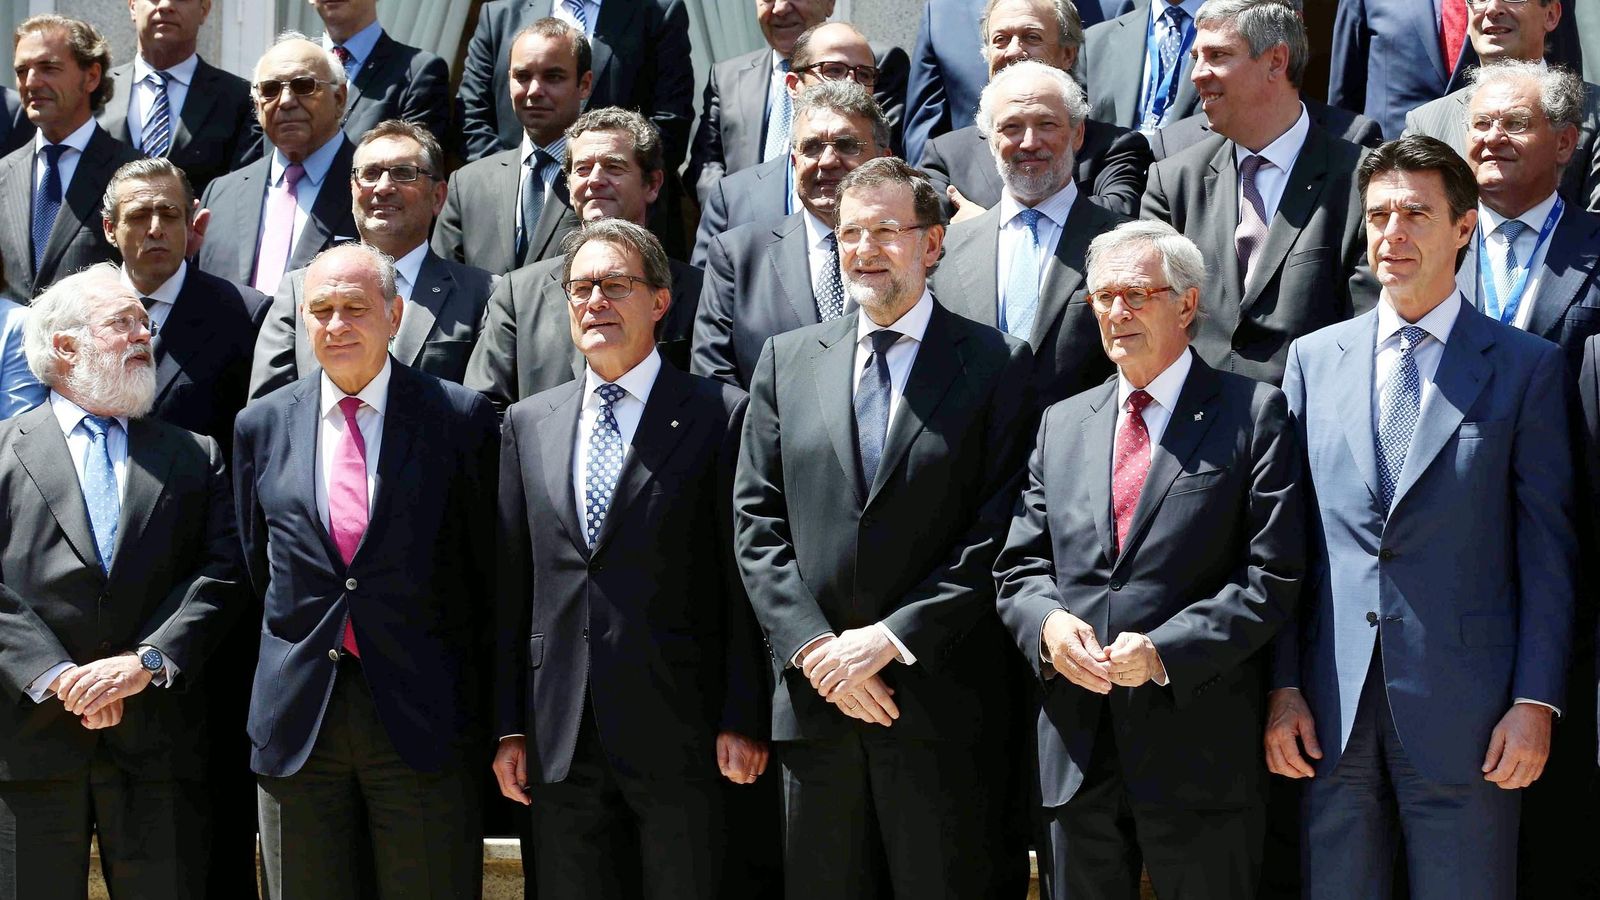 Foto: Mariano Rajoy durante su visita al salón de la autonomoción en Barcelona (EFE)